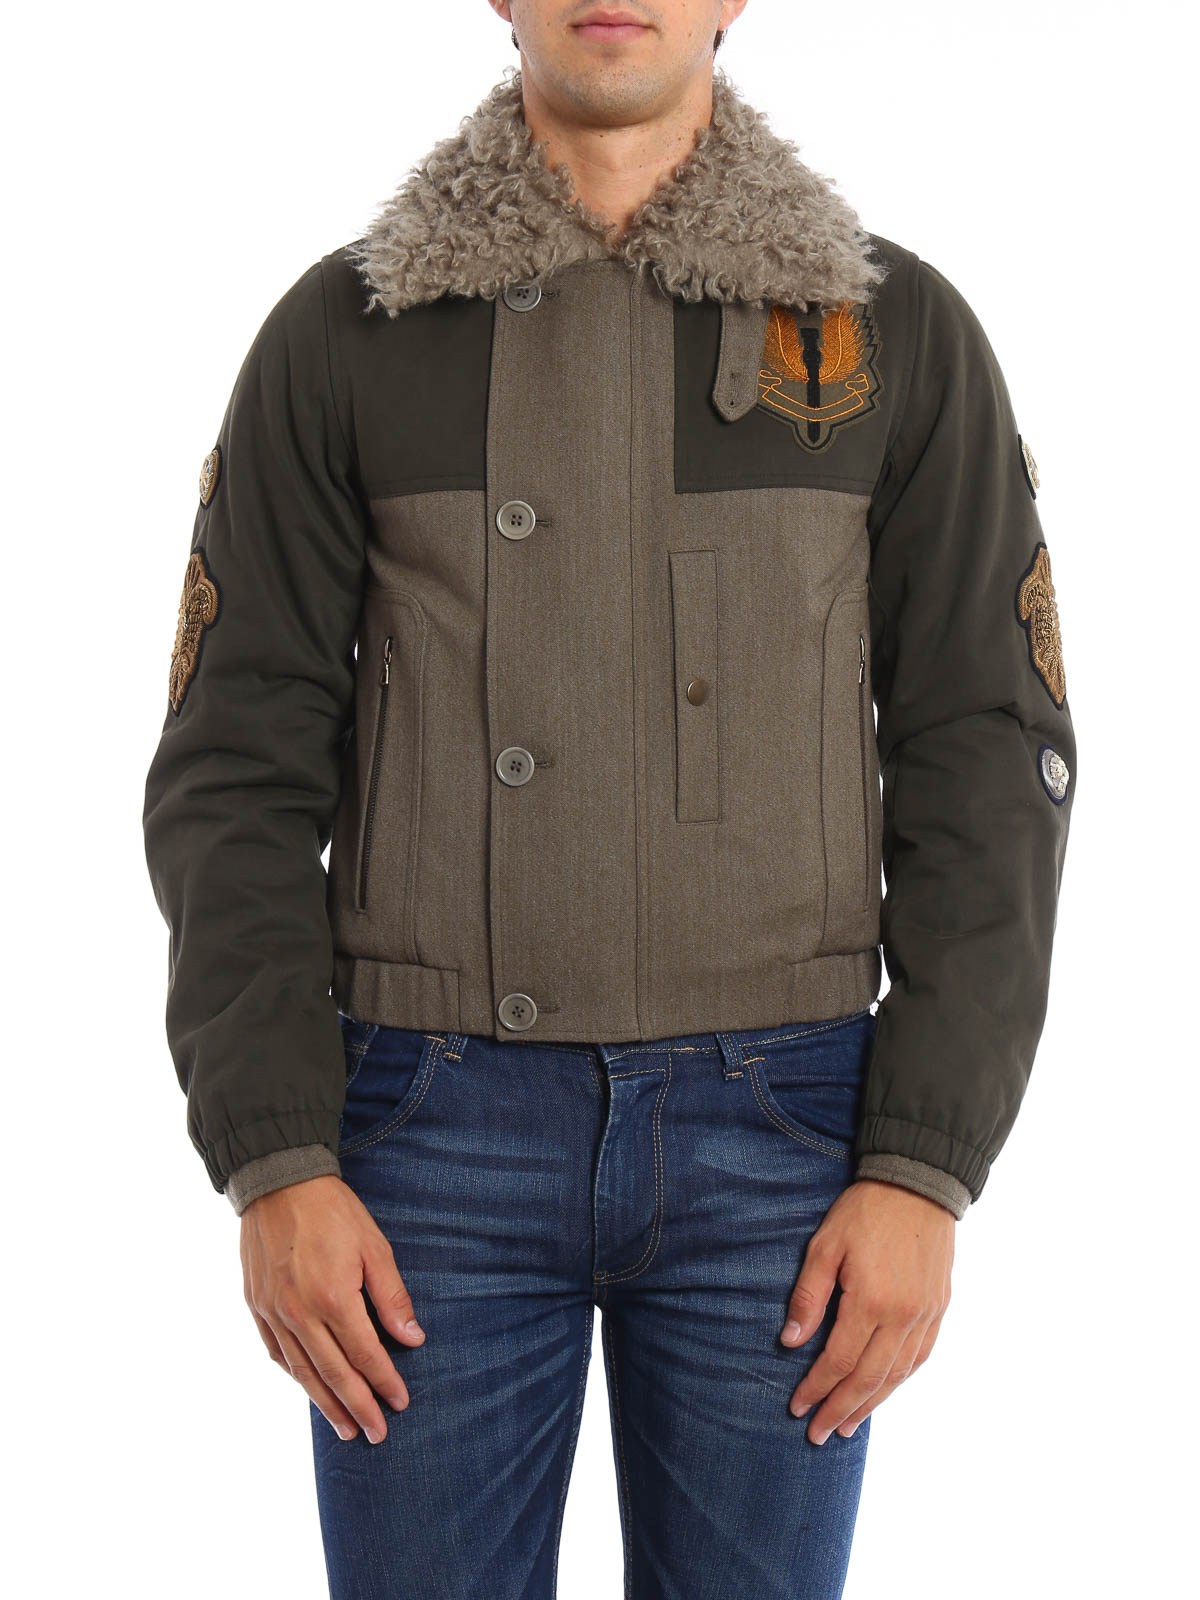 impuls Veraangenamen Gewoon overlopen Casual jackets Dries Van Noten - Faux fur detailed wool jacket -  205322181606